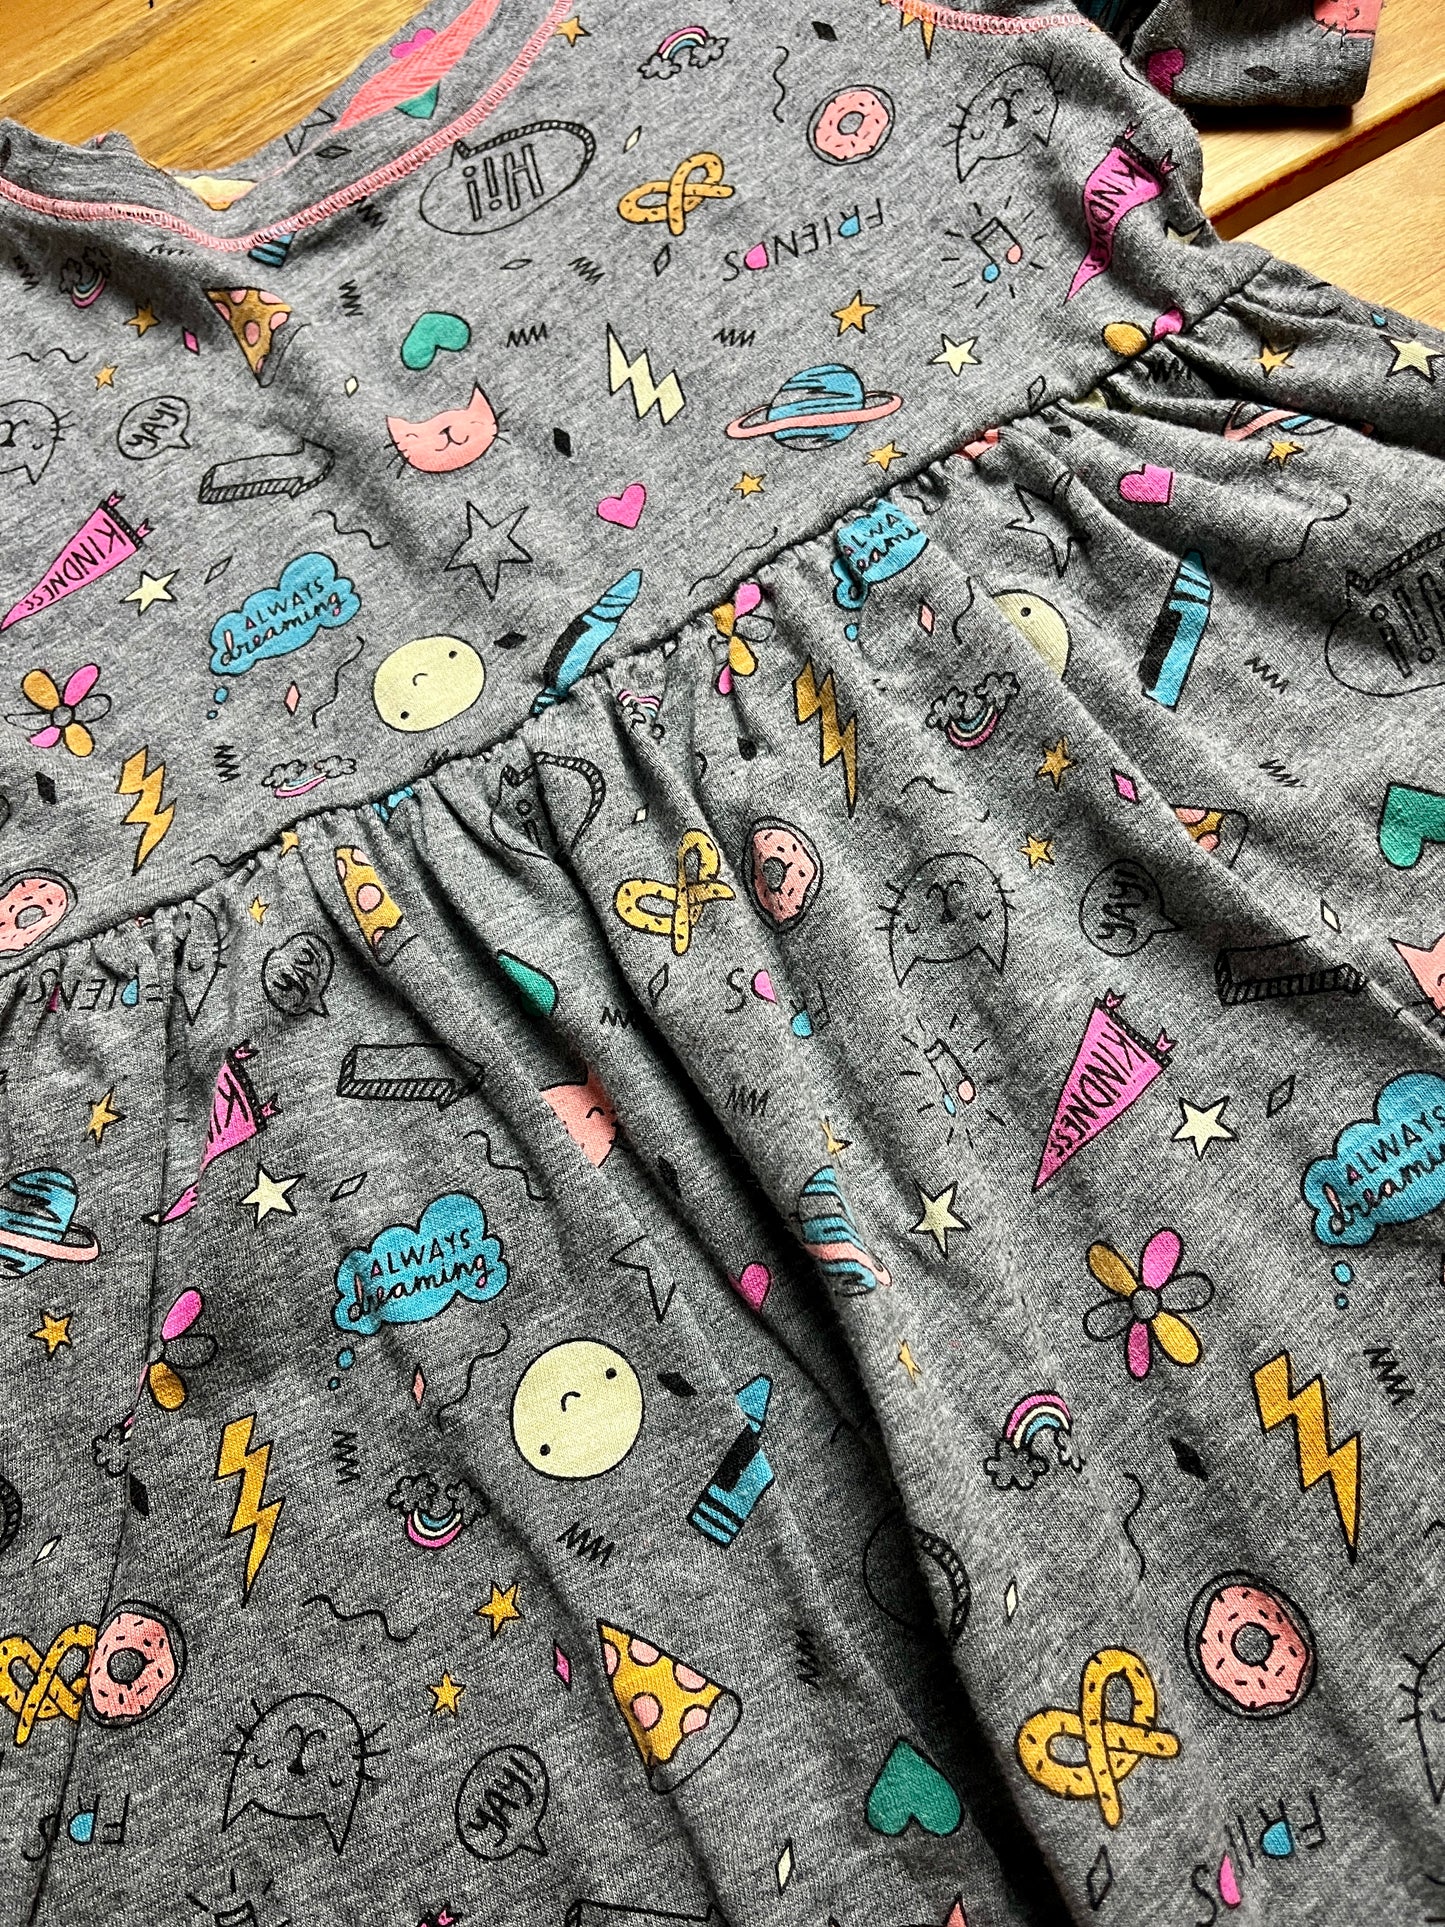 Cat & Jack Super Fun Print Dress Size 5T